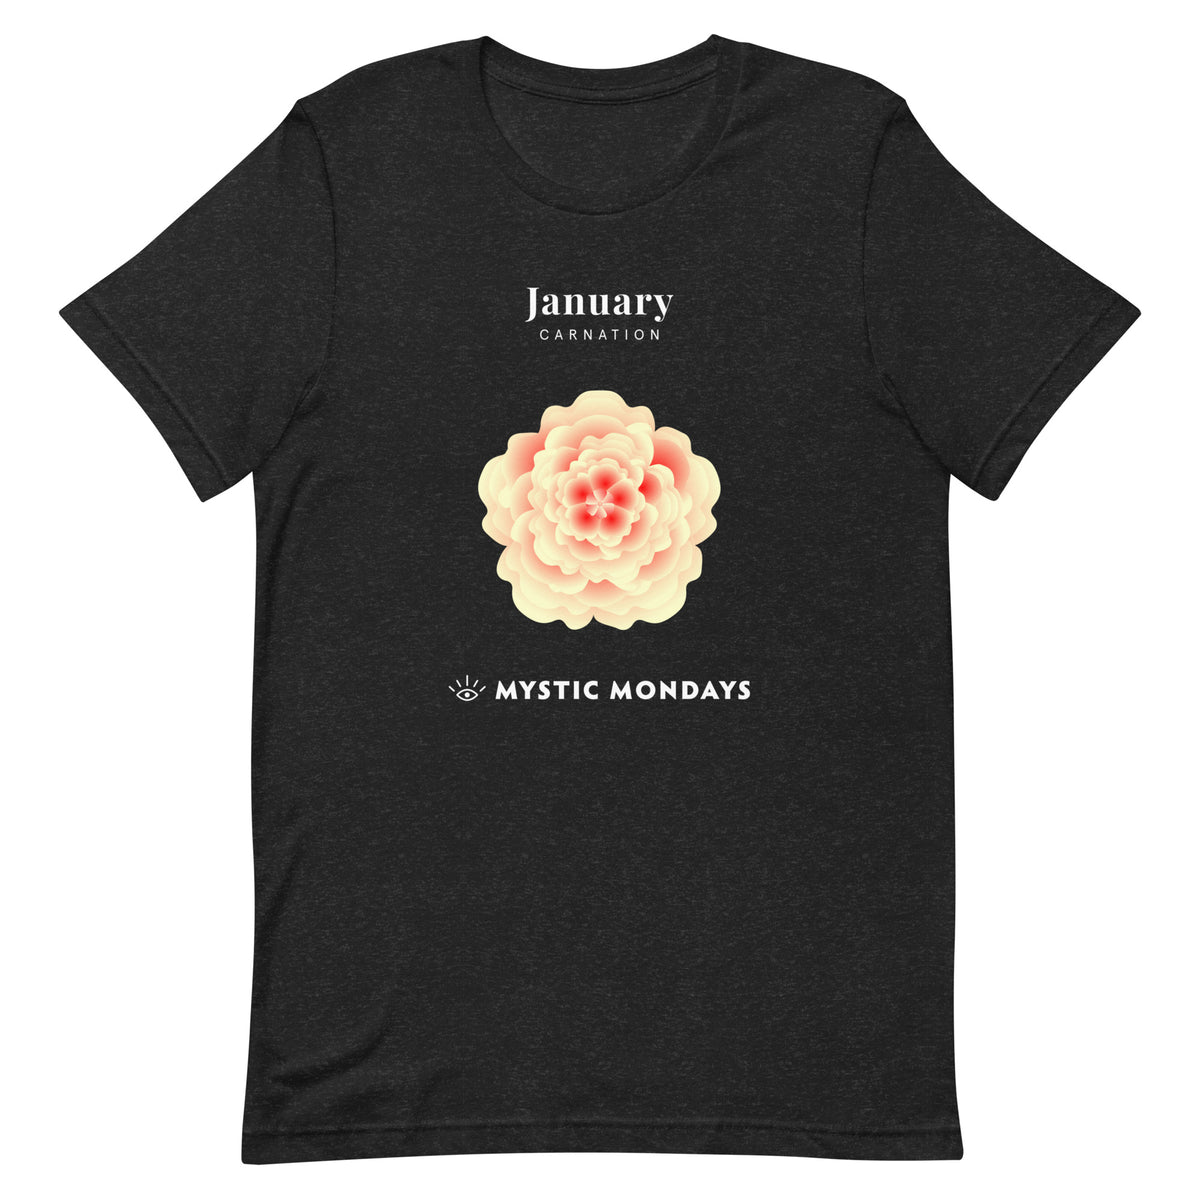 Carnation T-shirt